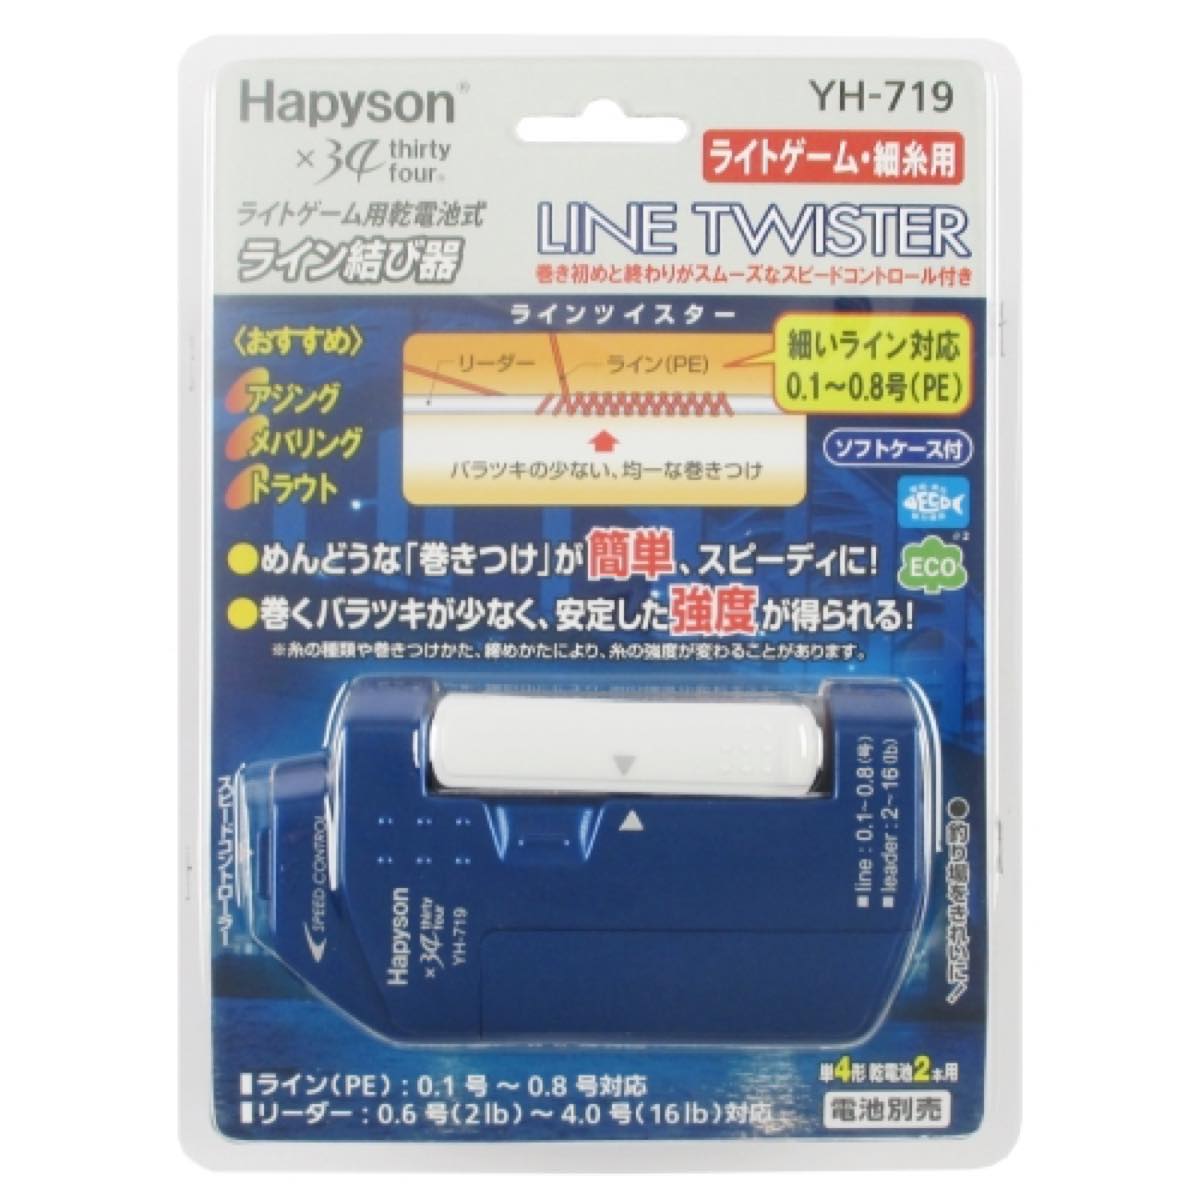 ハピソン ライン結び器 ライトゲーム用乾電池式 ラインツイスター 細糸用 YH-719